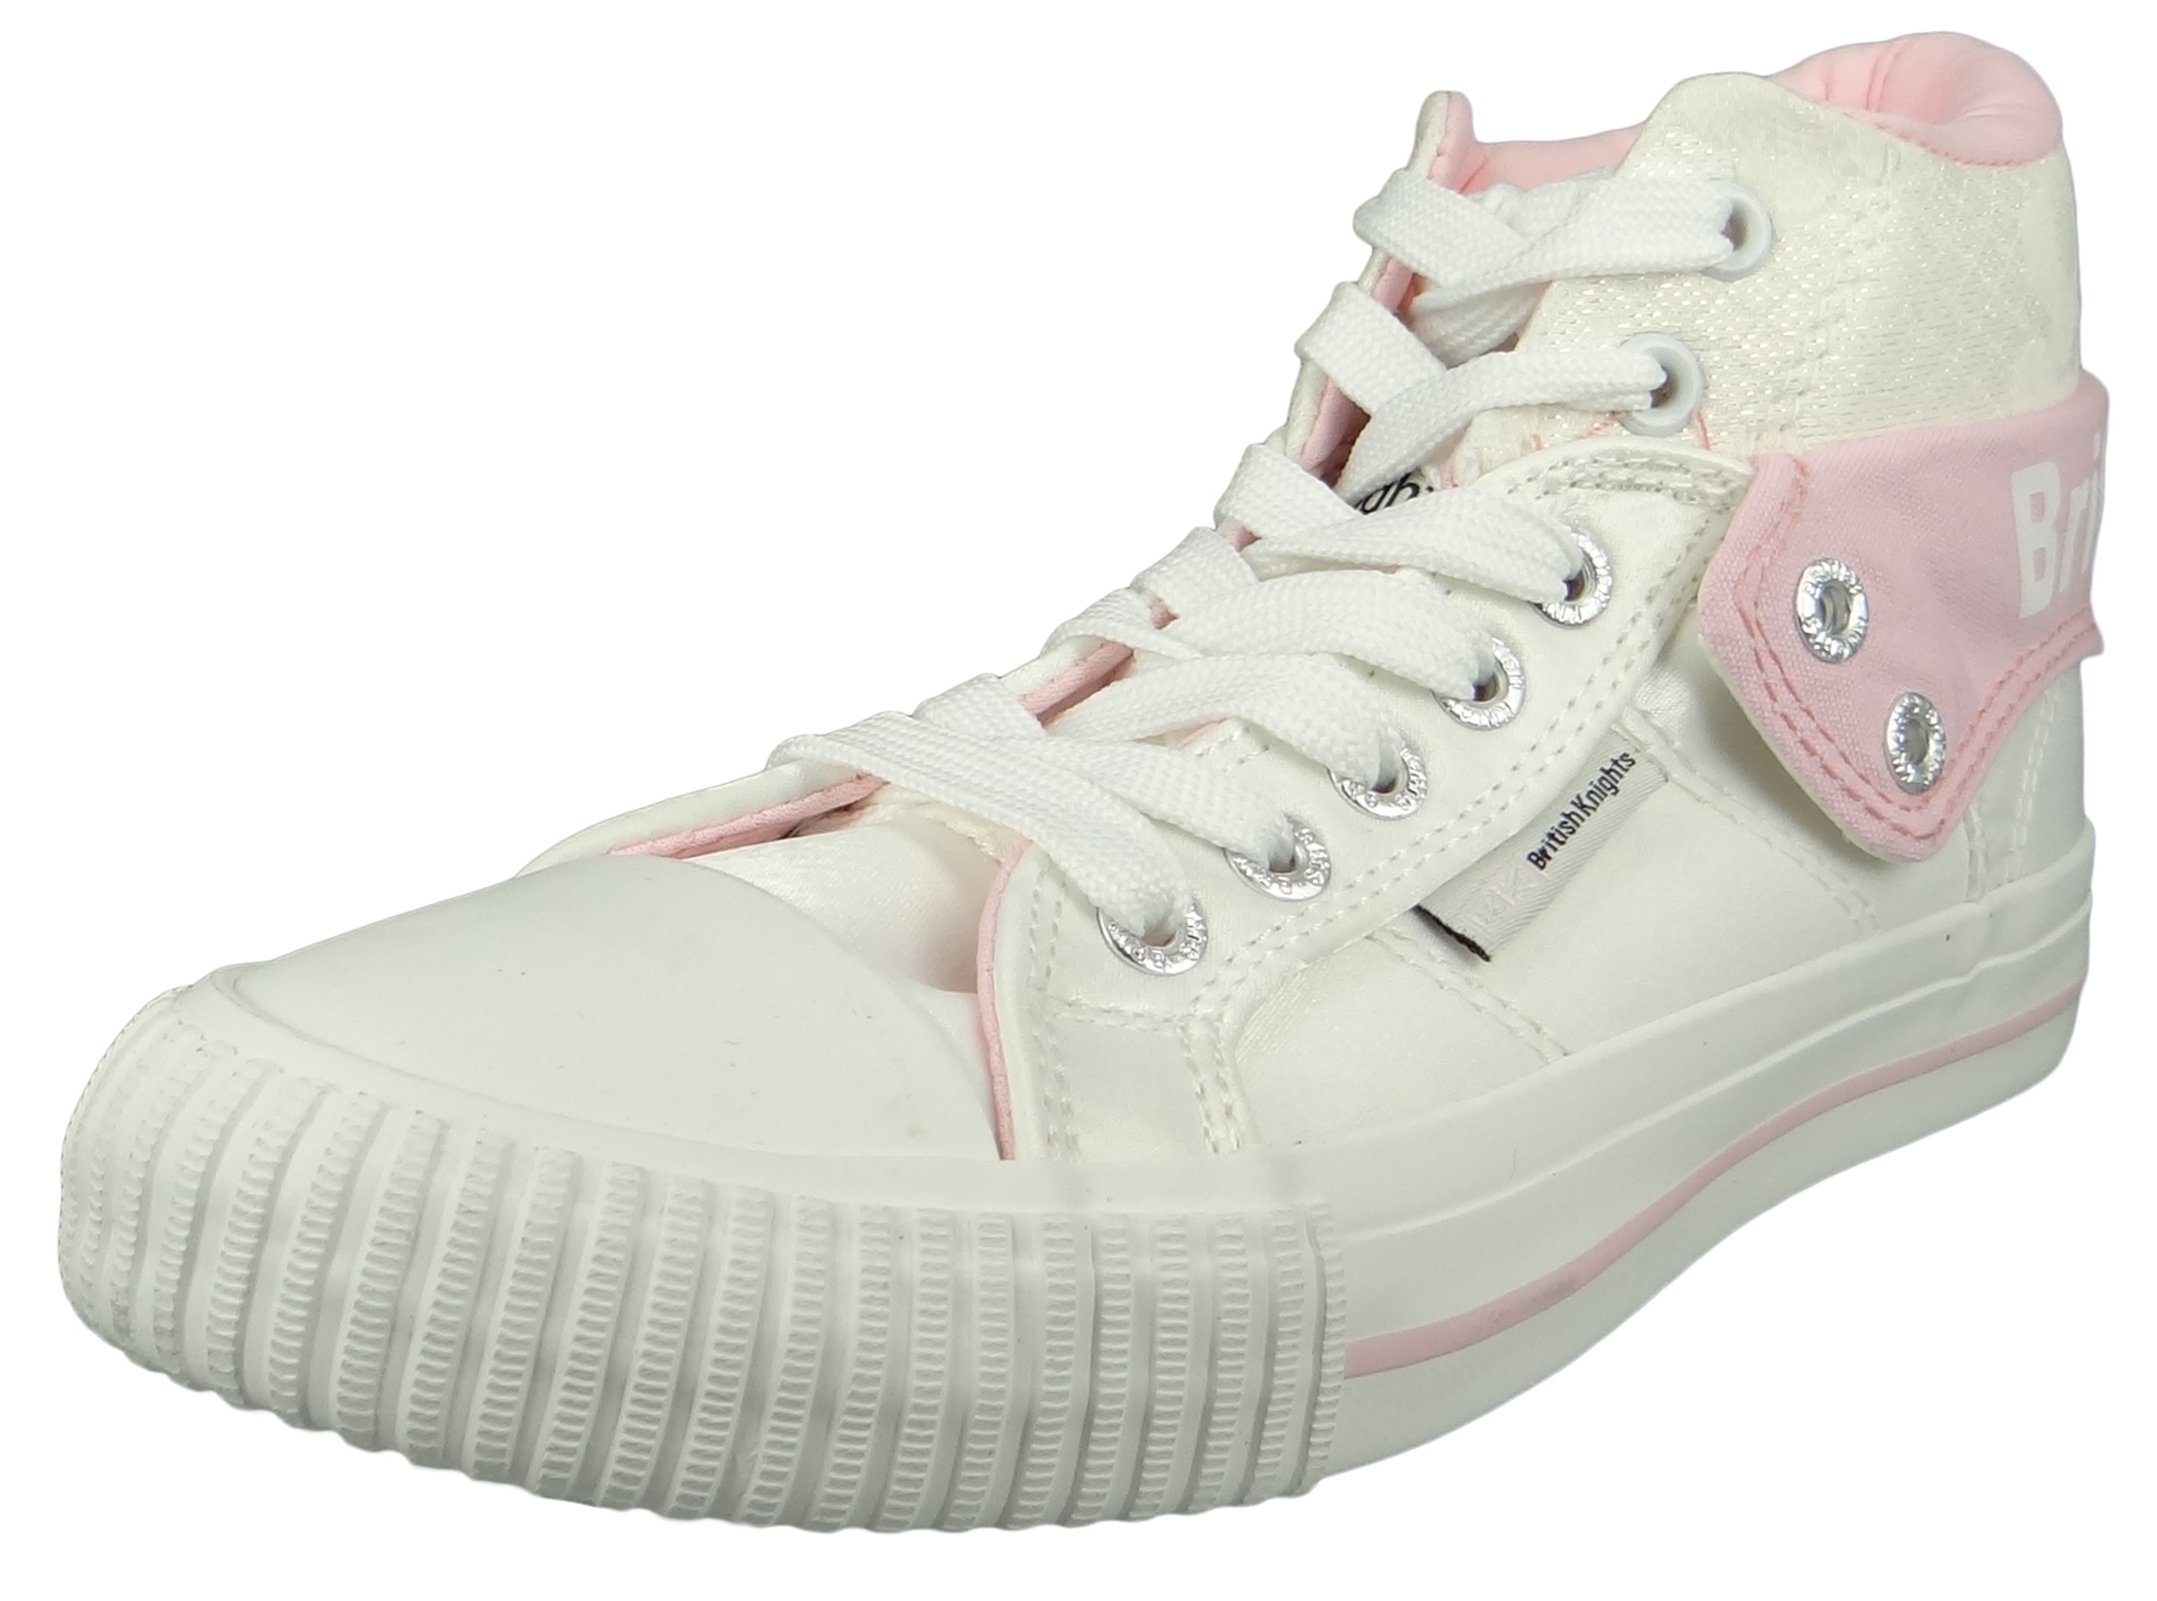 Knights B43-3709-02 Flower Sneaker Pink British White Roco